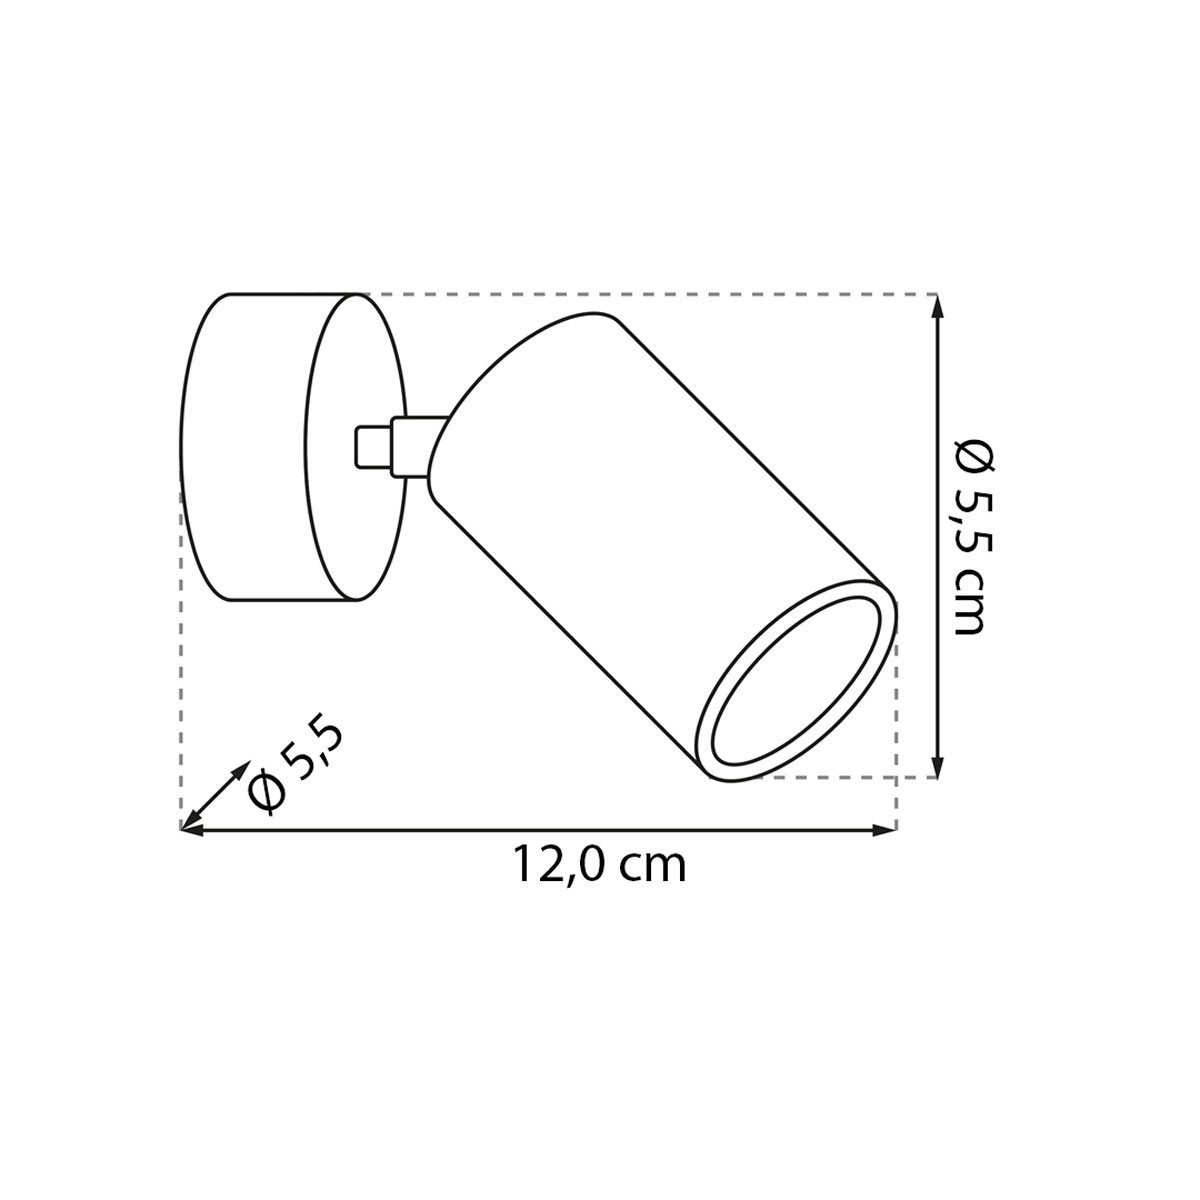 Leuchtmittel Gilon cm, abhängig nicht für Leuchtmittel, Kiom Deckenspot Ø 1x Deckenleuchte schwarz Leuchtmittel wechselbare inklusive, C1 GU10 5,5